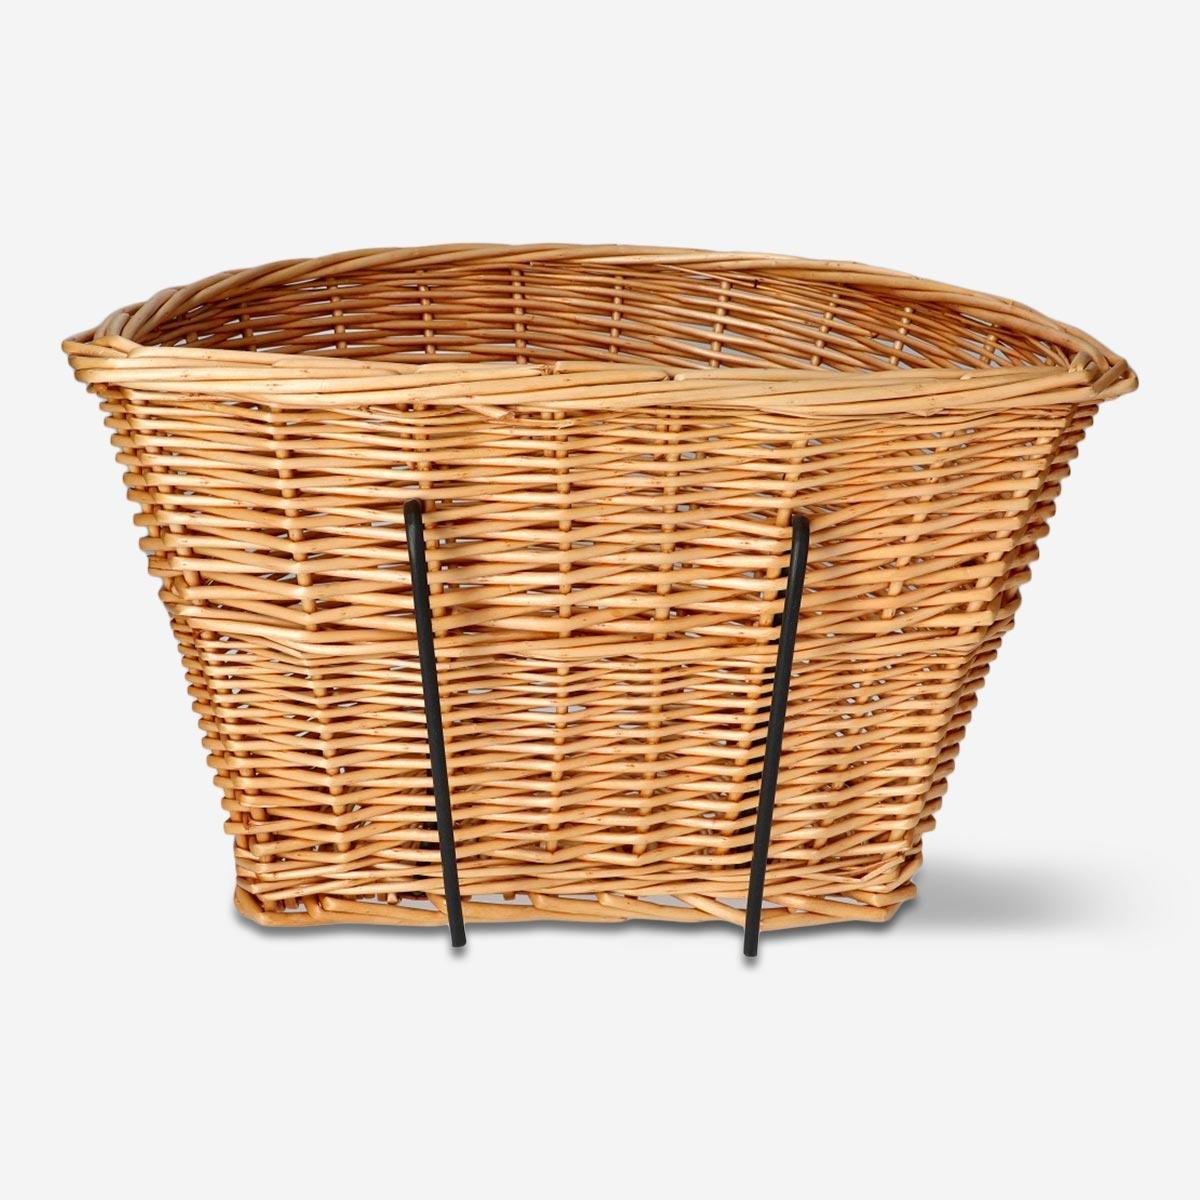 Woven bicycle basket